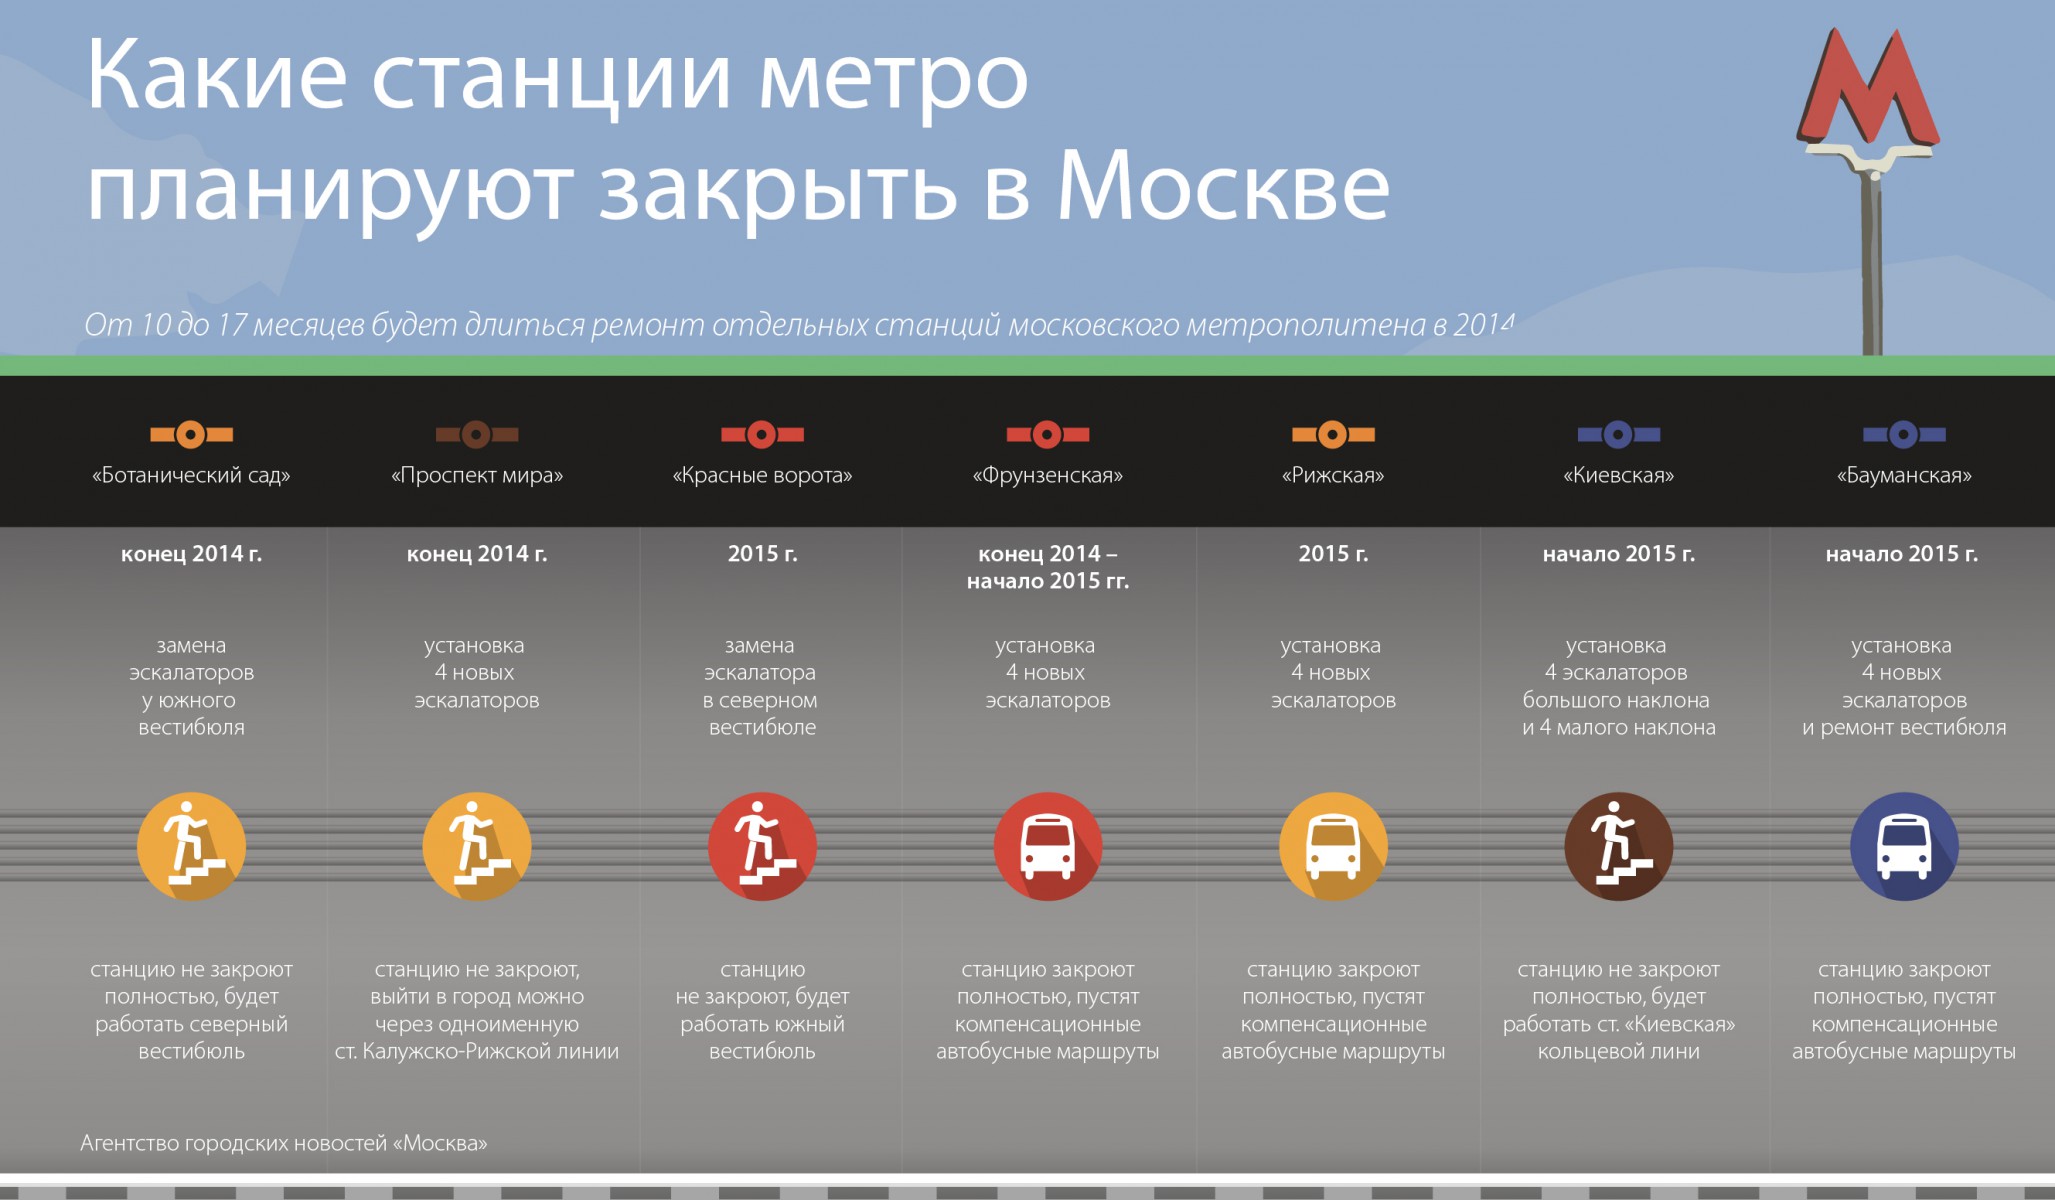 Какой в москве есть интернет. Какие станции закрывают. Какие станции метро закрыты сегодня. Какие станции метро закрыты сегодня в Москве на ремонт. Какую станцию в метро отремонтировали.